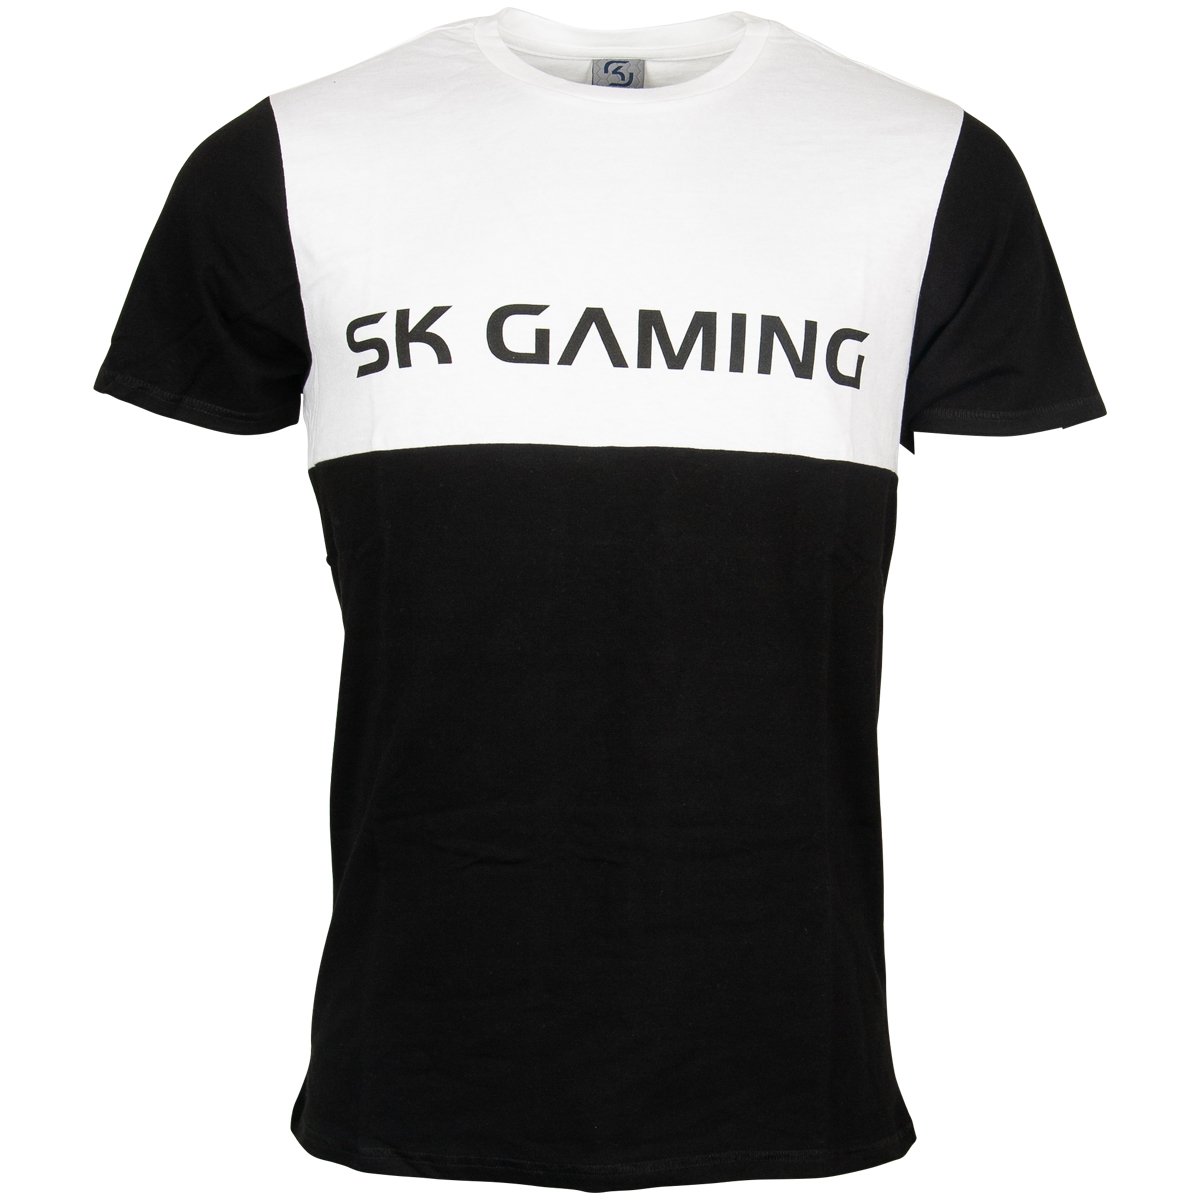 SK Gaming T-Shirt "Colorblock" - black